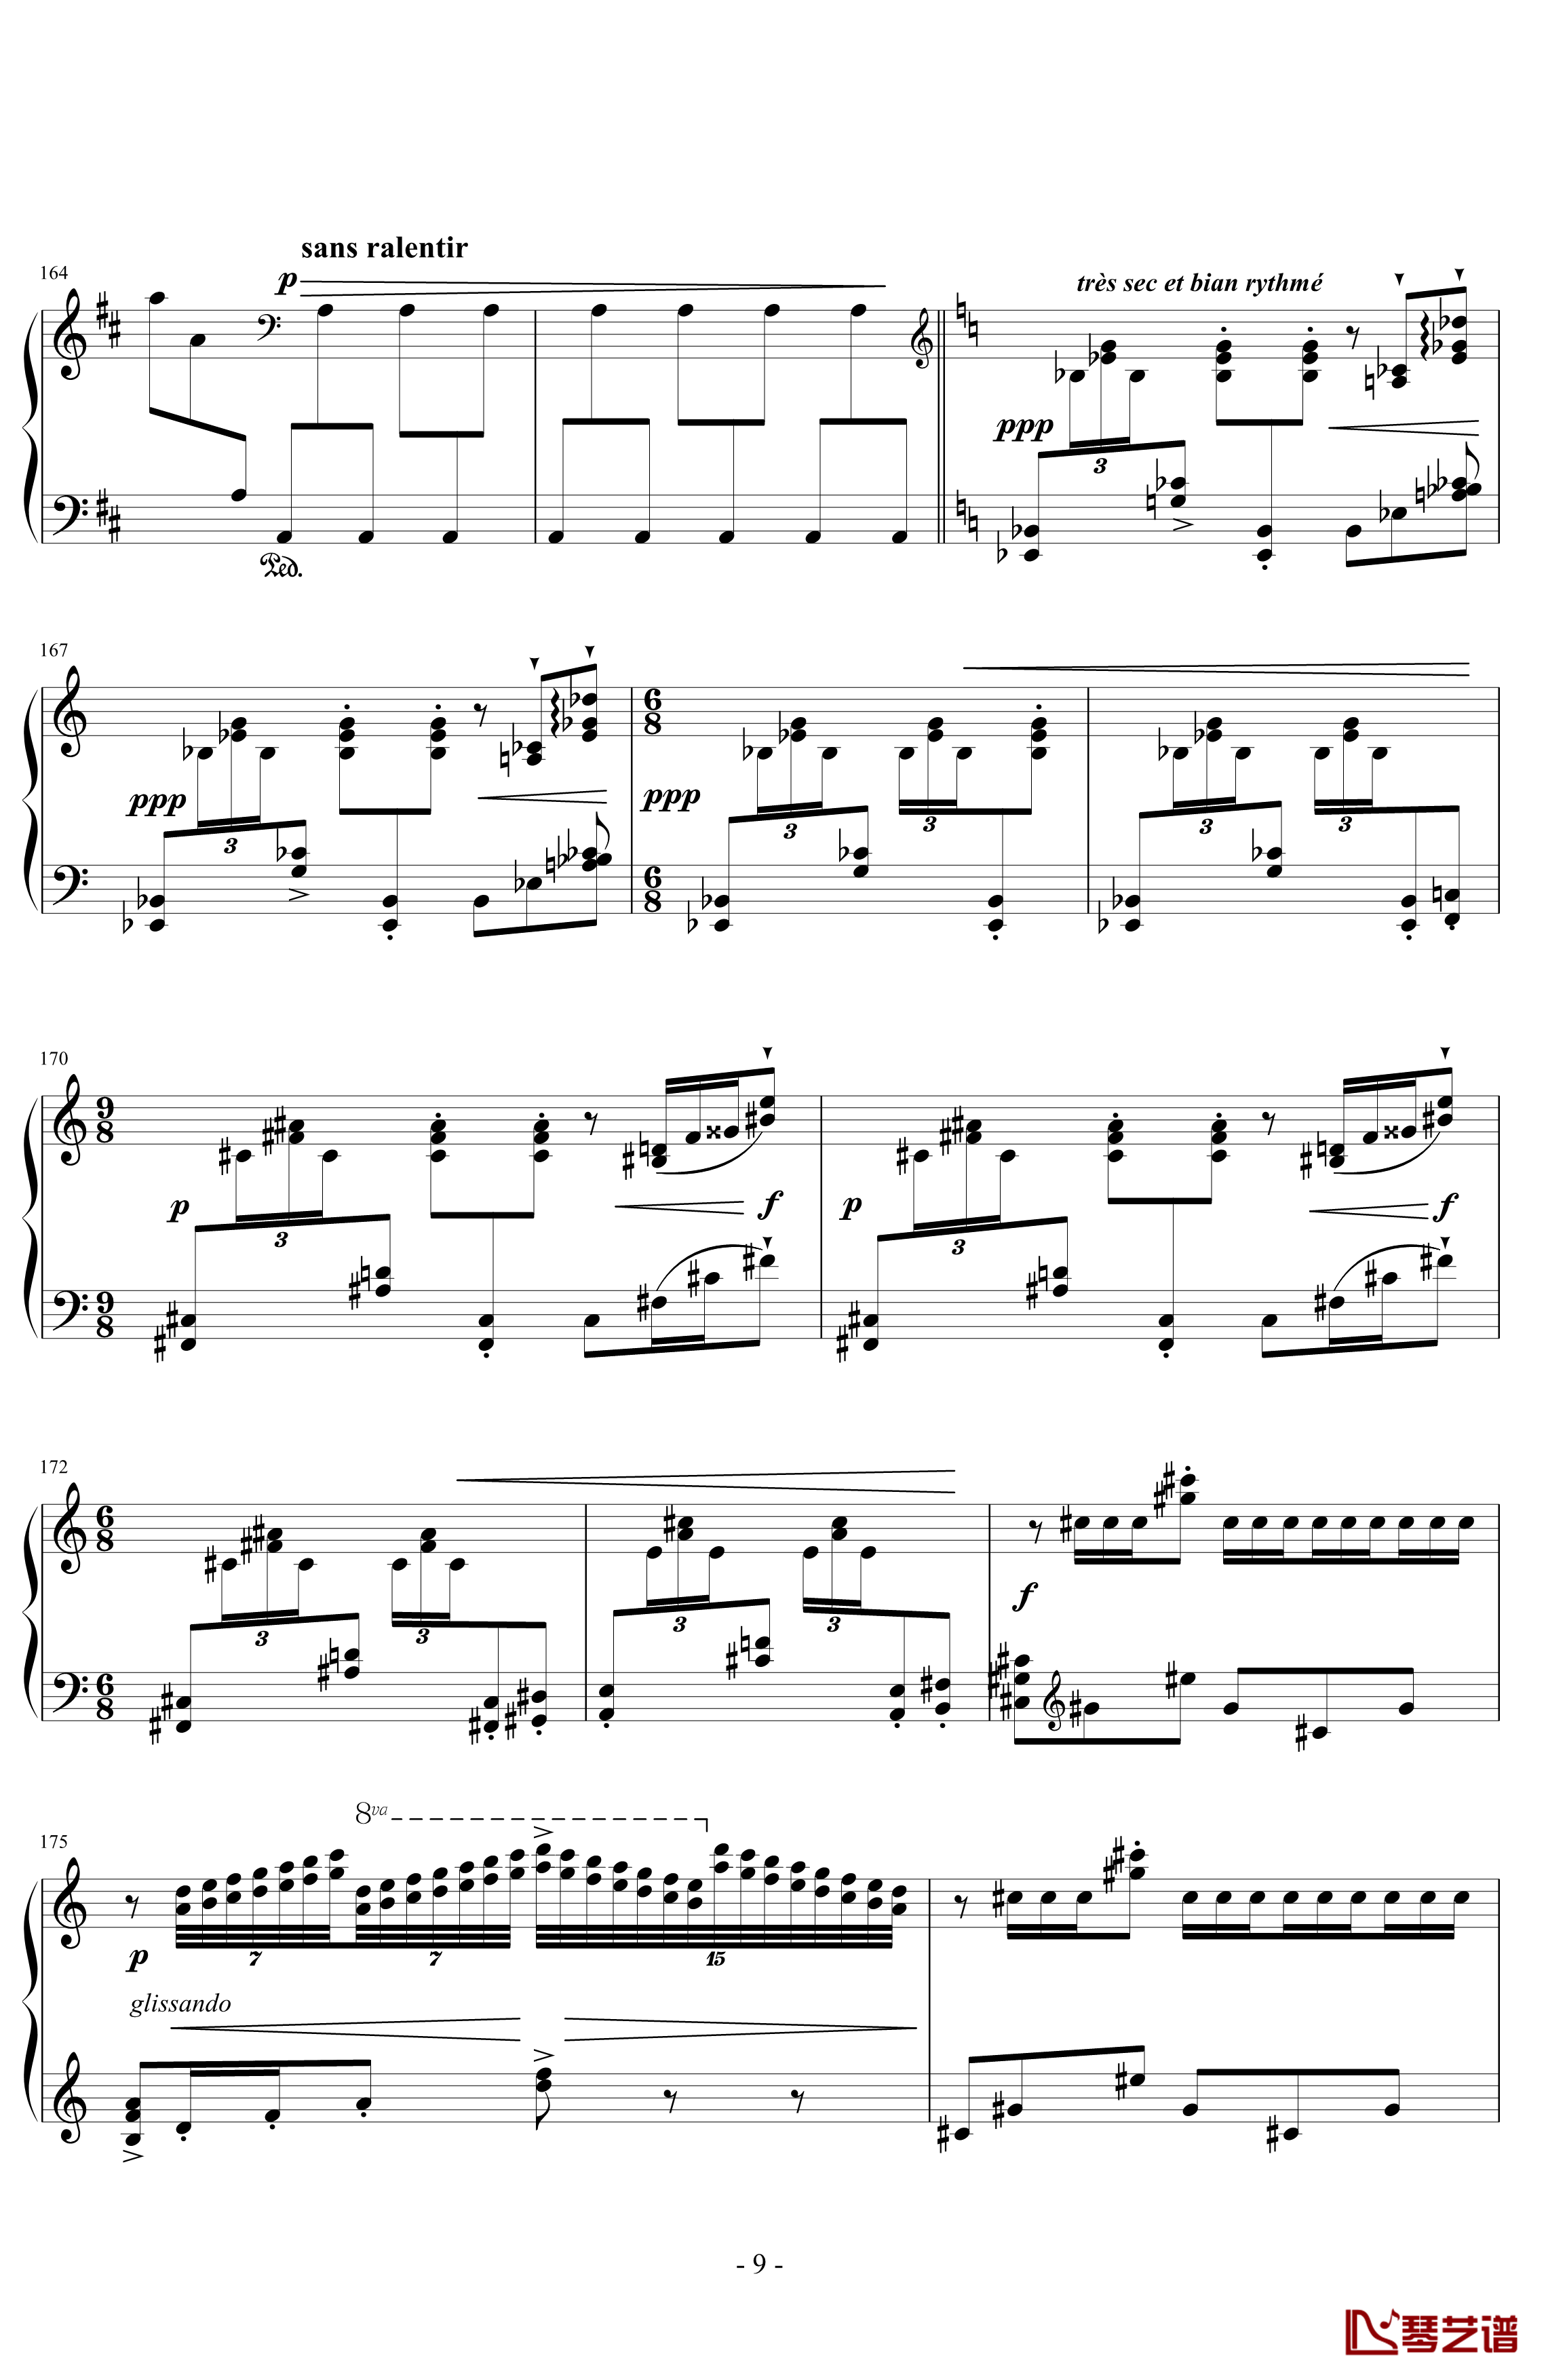 丑角的晨歌钢琴谱-组曲第4首-拉威尔-Ravel9